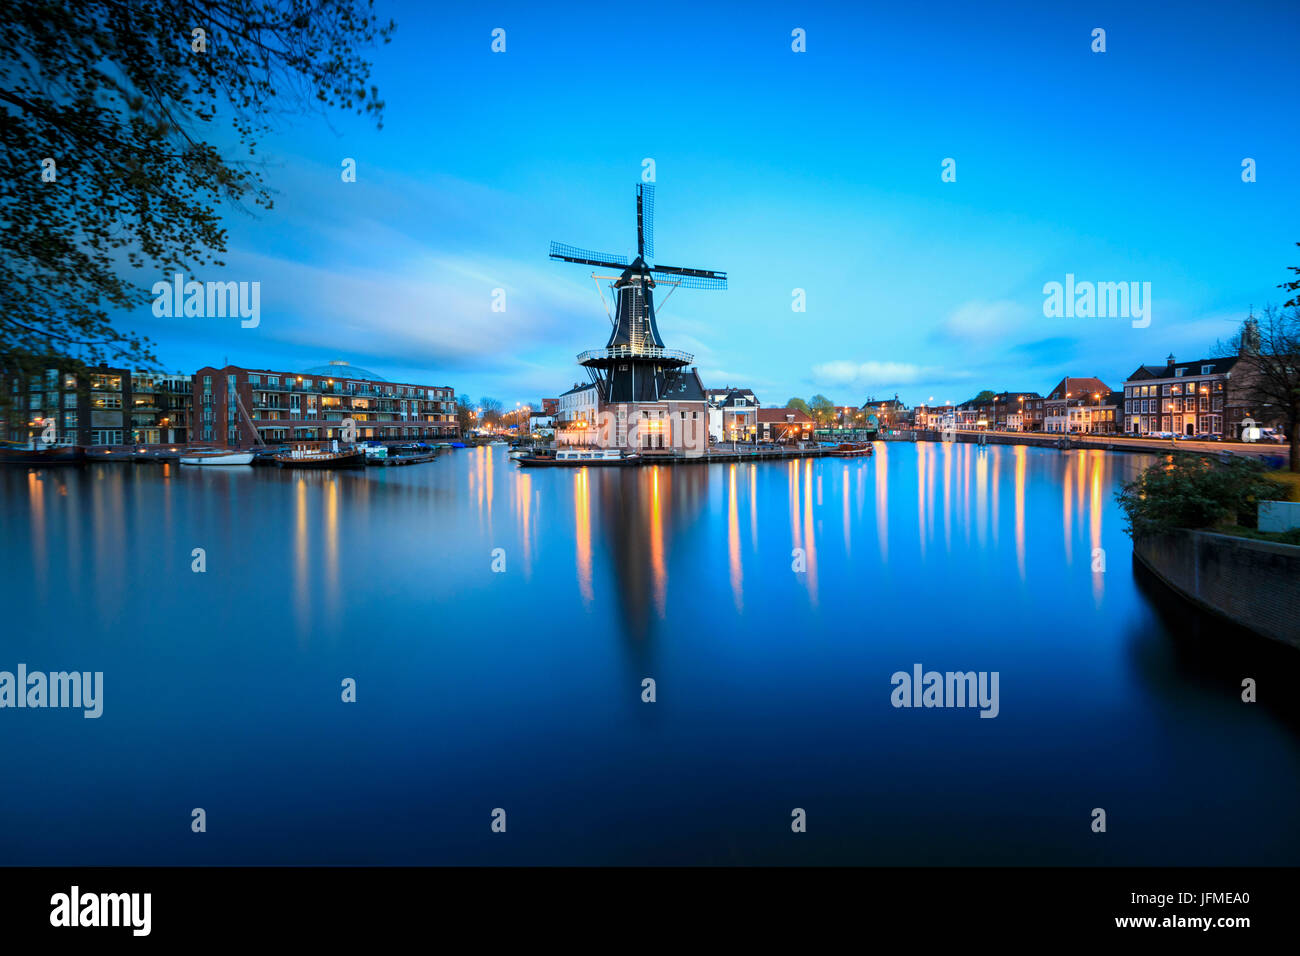 La tombée de voyants sur le Moulin de Adriaan reflète dans river Spaarne Haarlem aux Pays-Bas Hollande du Nord Europe Banque D'Images